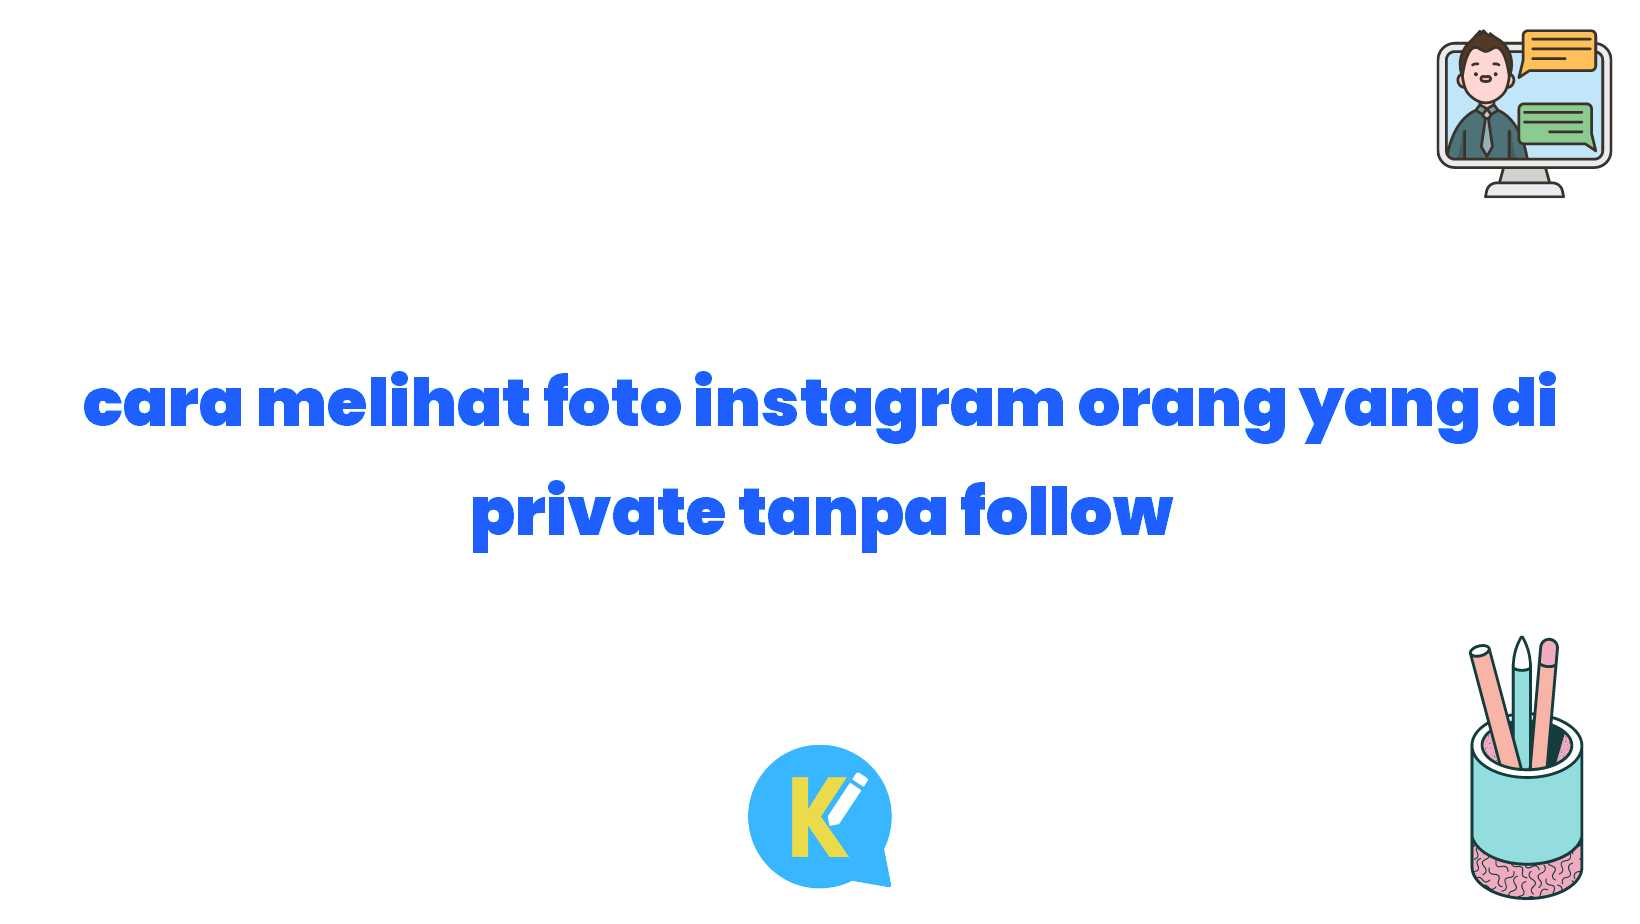 cara melihat foto instagram orang yang di private tanpa follow